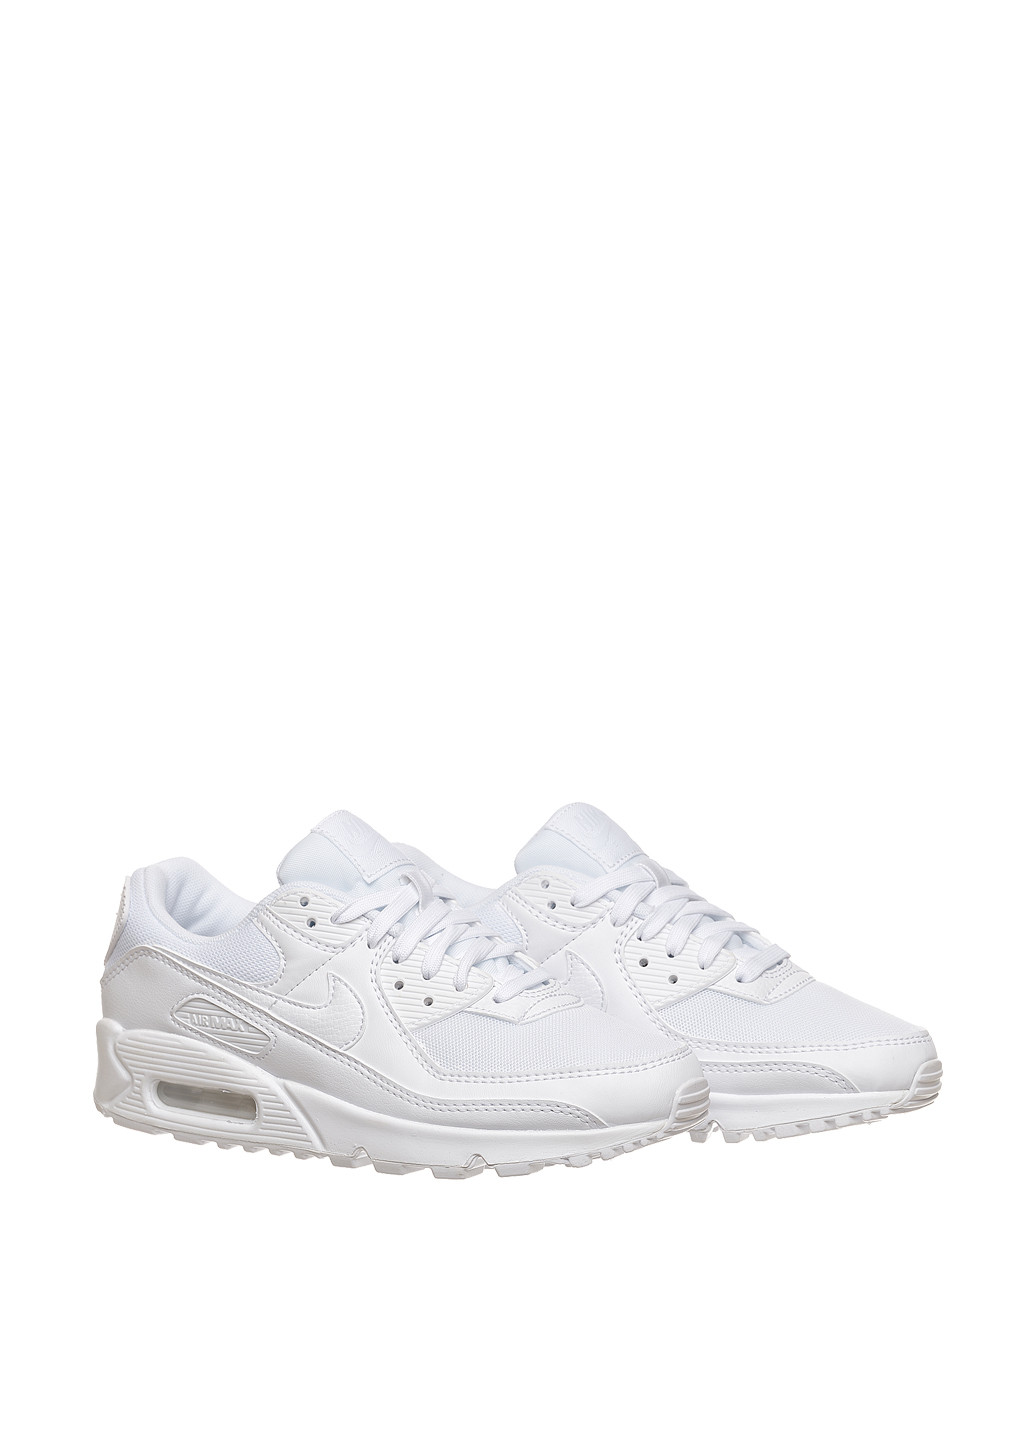 Белые демисезонные кроссовки dh8010-100_2024 Nike WMNS AIR MAX 90